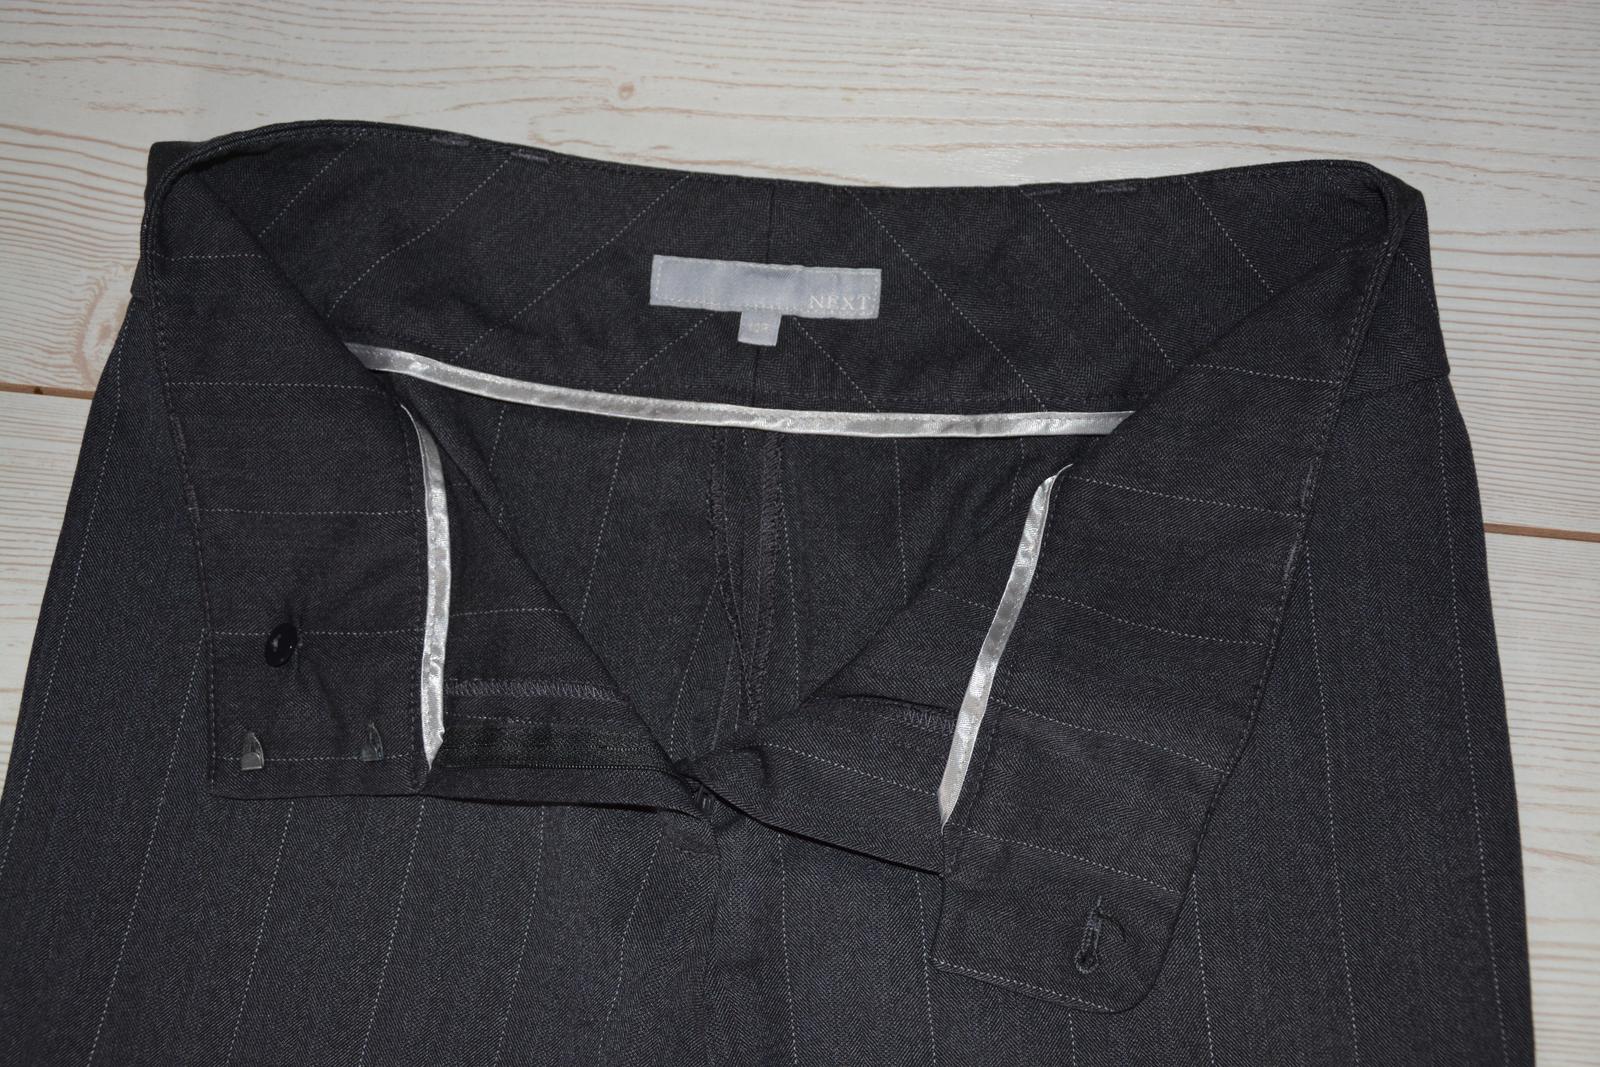 Tmavě šedé kalhoty s proužkem NEXT - Obrázek č. 3